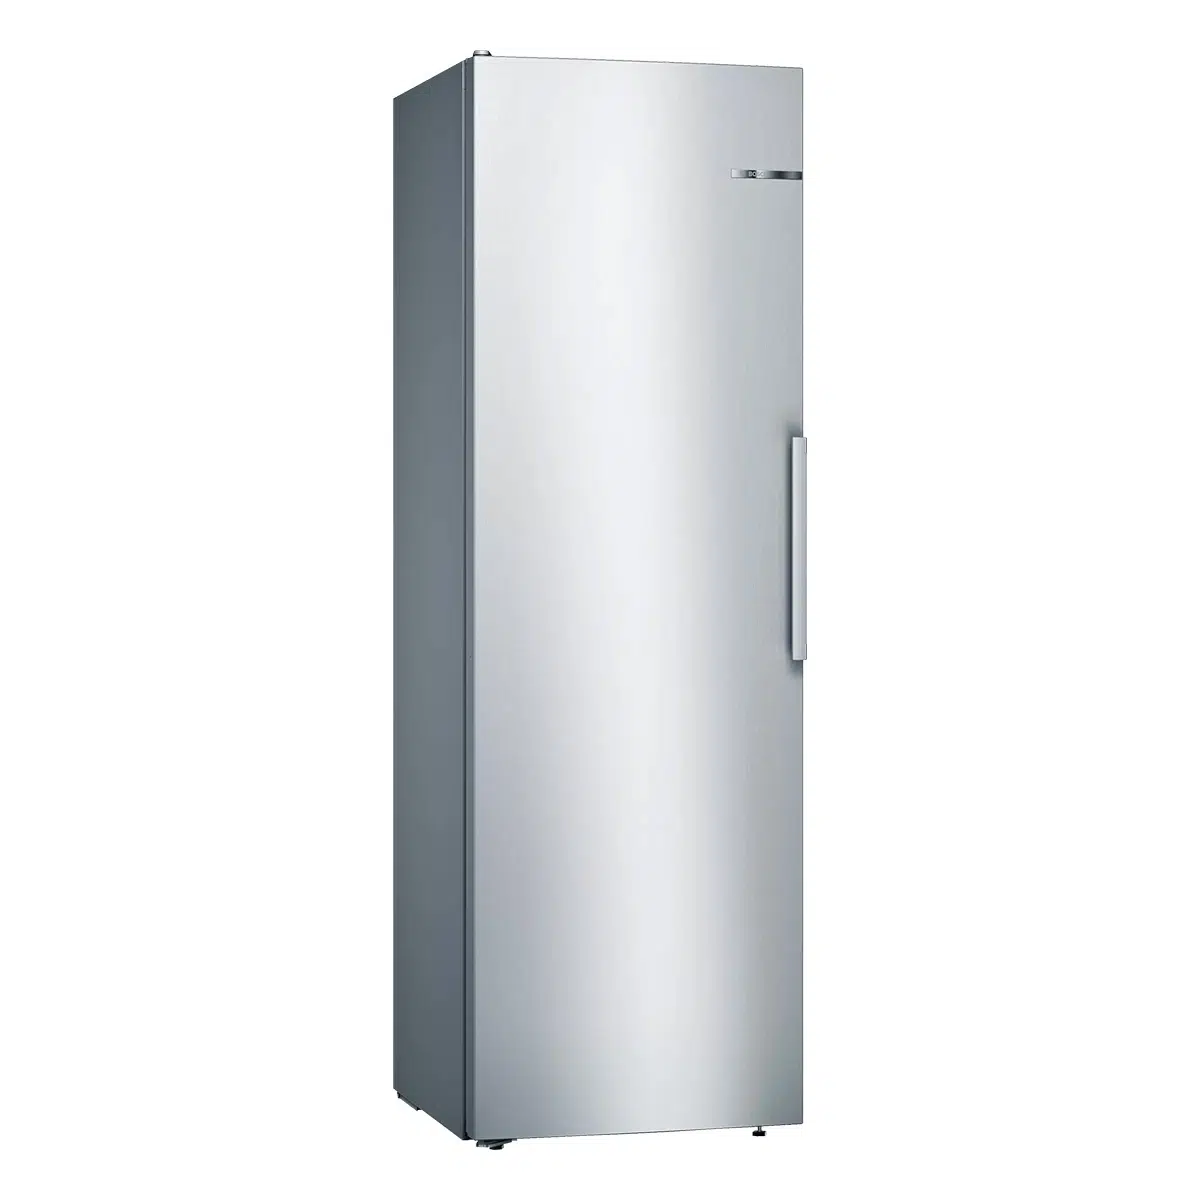 Tủ lạnh Bosch đơn cánh độc lập (Chỉ suy nhất tủ mát, không có tủ đông)